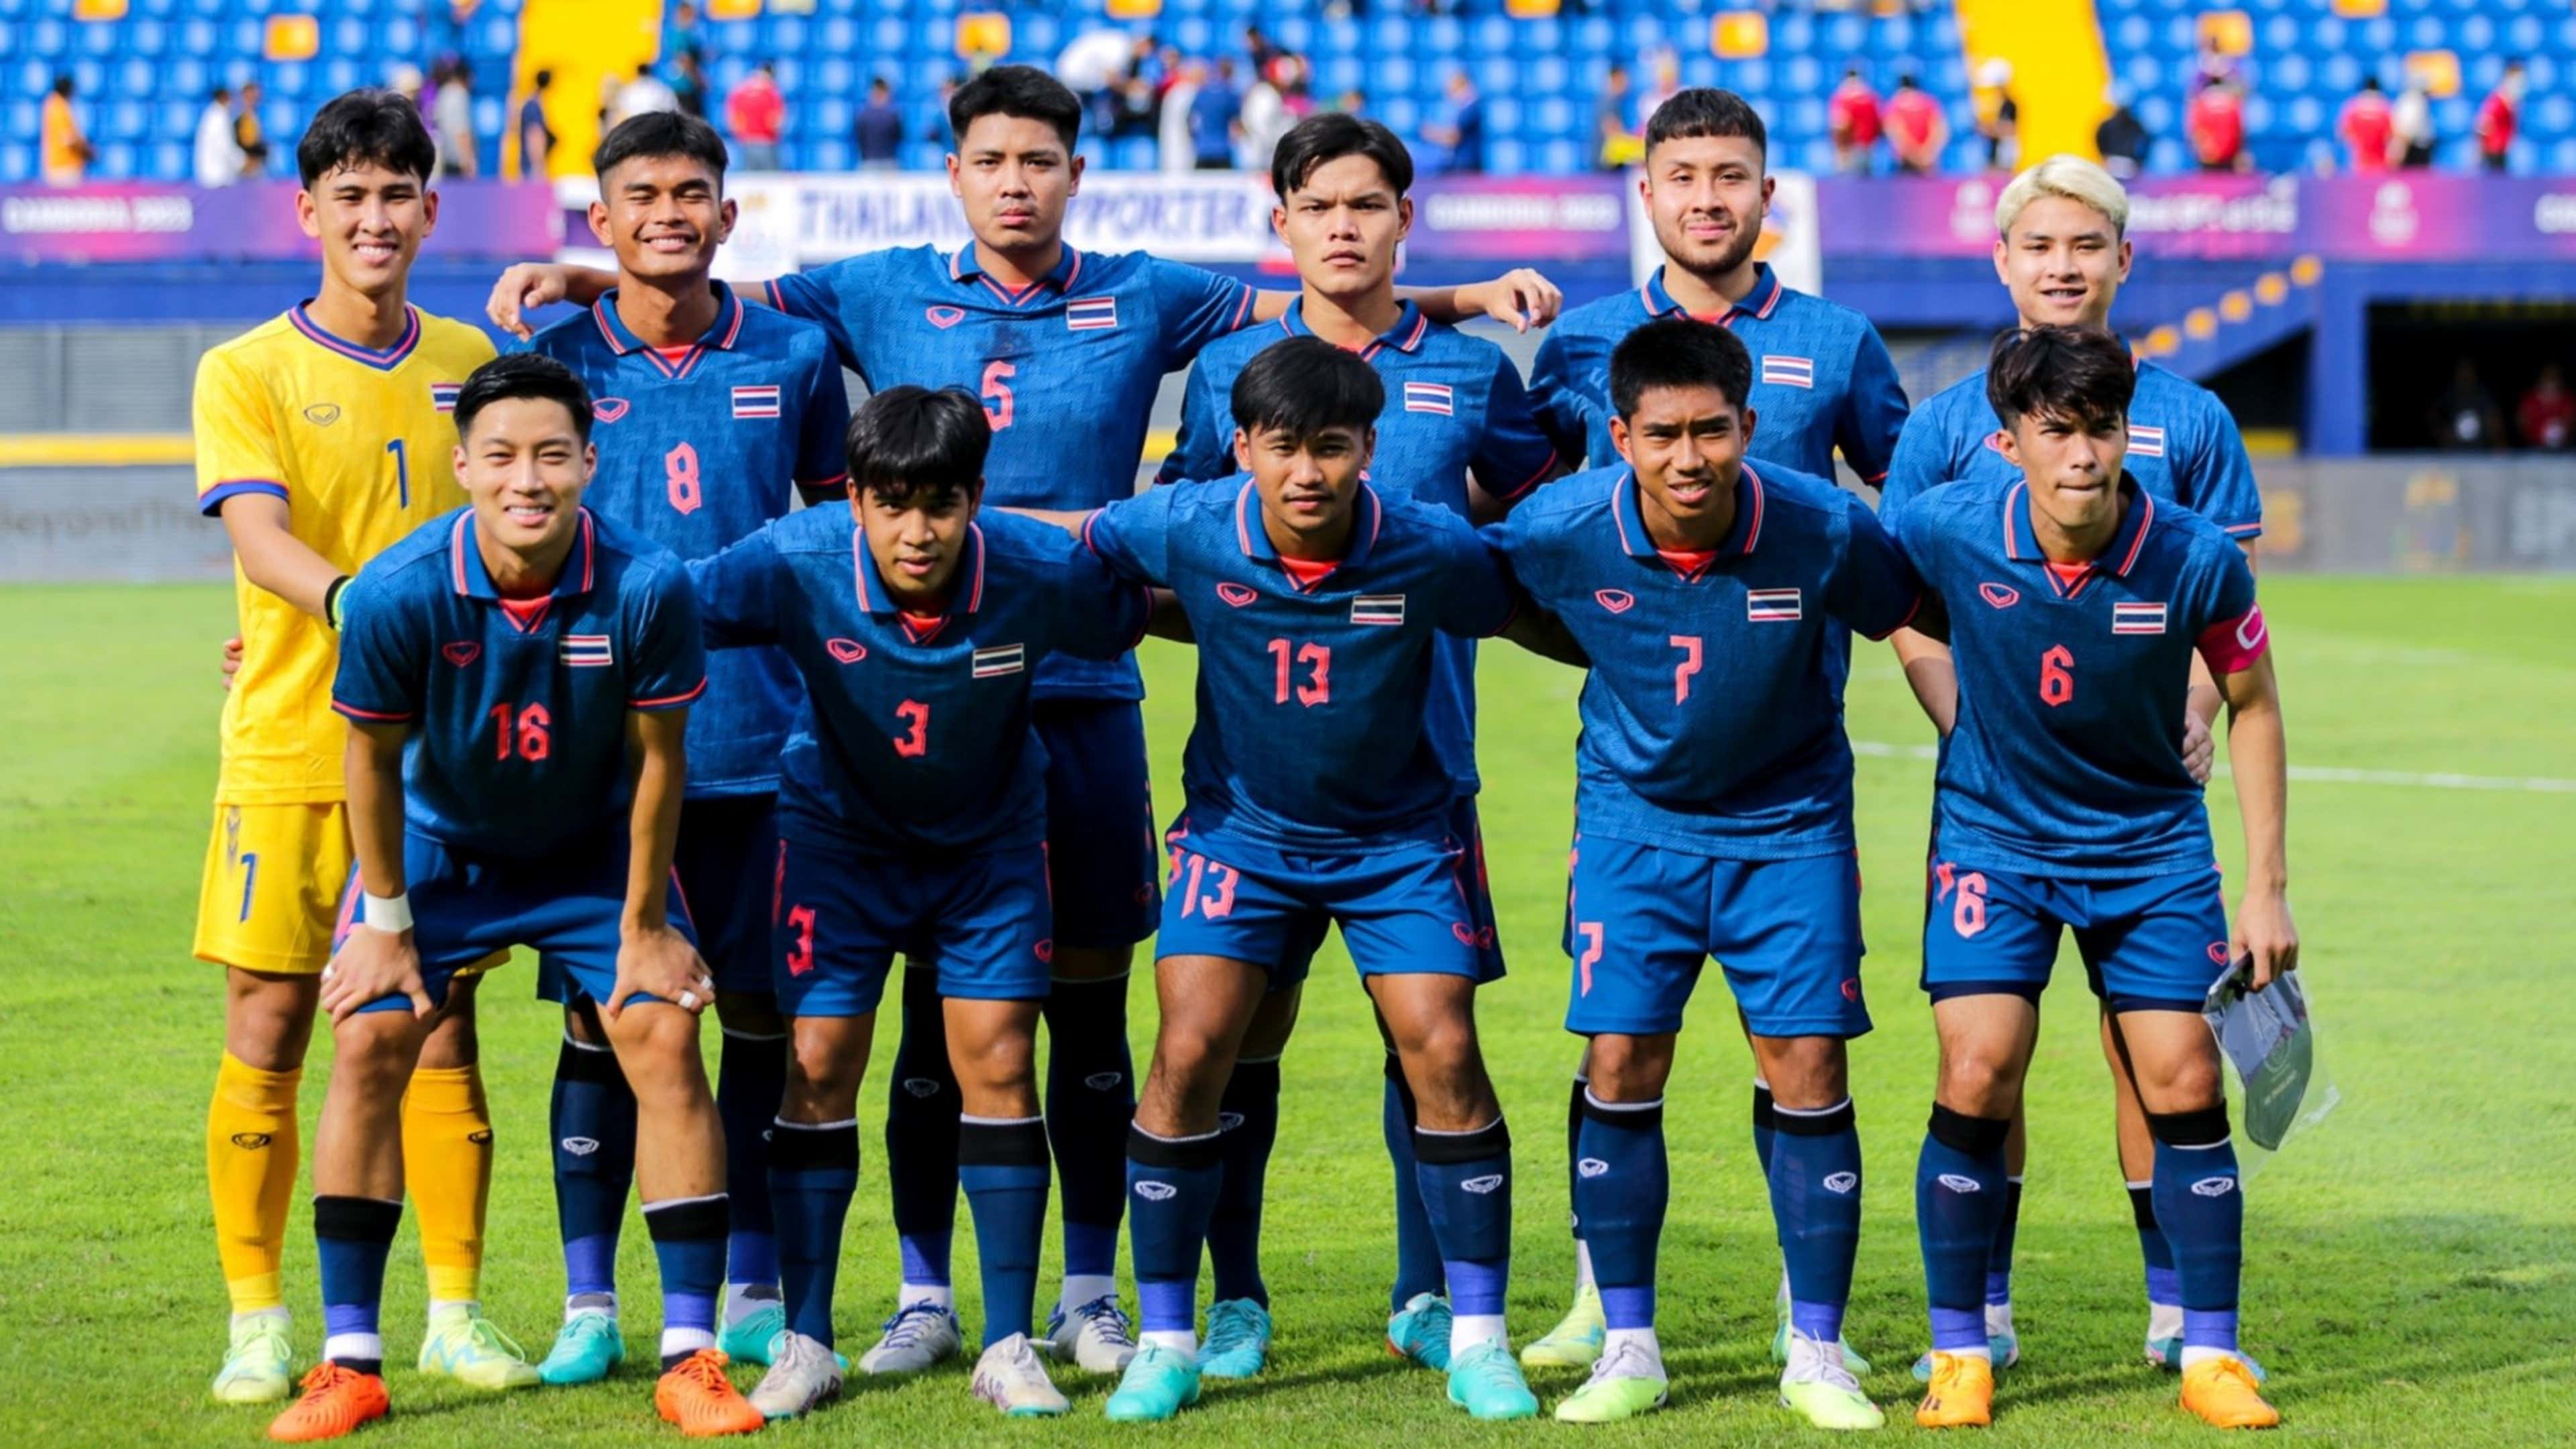 ฟุตบอลชายซีเกมส์ 2023 : รายชื่อทีมชาติไทย, โปรแกรม, ตารางแข่ง, เช็คผล,  ตารางคะแนน และโปรแกรมถ่ายทอดสด | Goal.Com ภาษาไทย